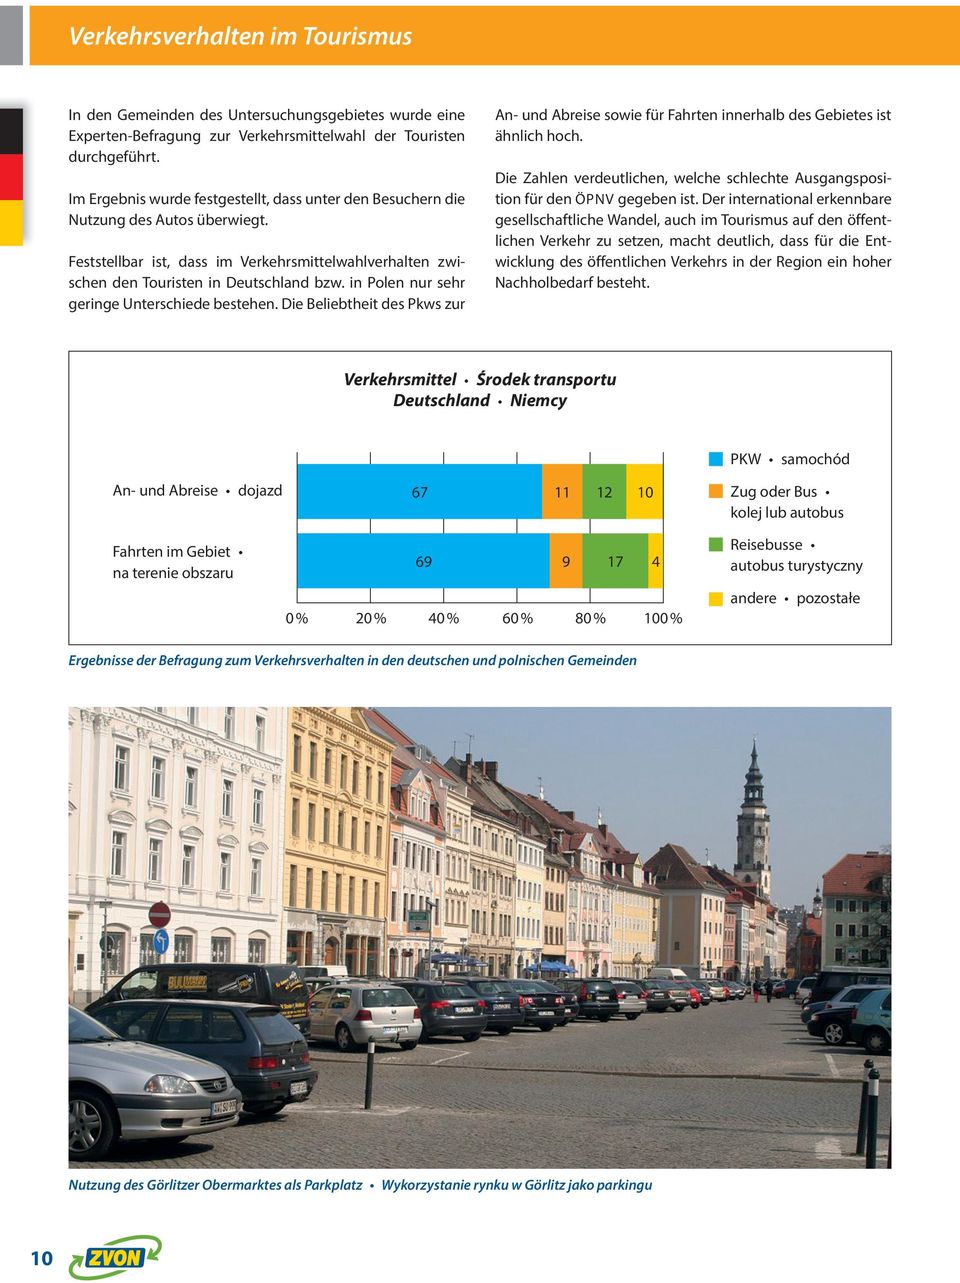 in Polen nur sehr geringe Unterschiede bestehen. Die Beliebtheit des Pkws zur An- und Abreise sowie für Fahrten innerhalb des Gebietes ist ähnlich hoch.